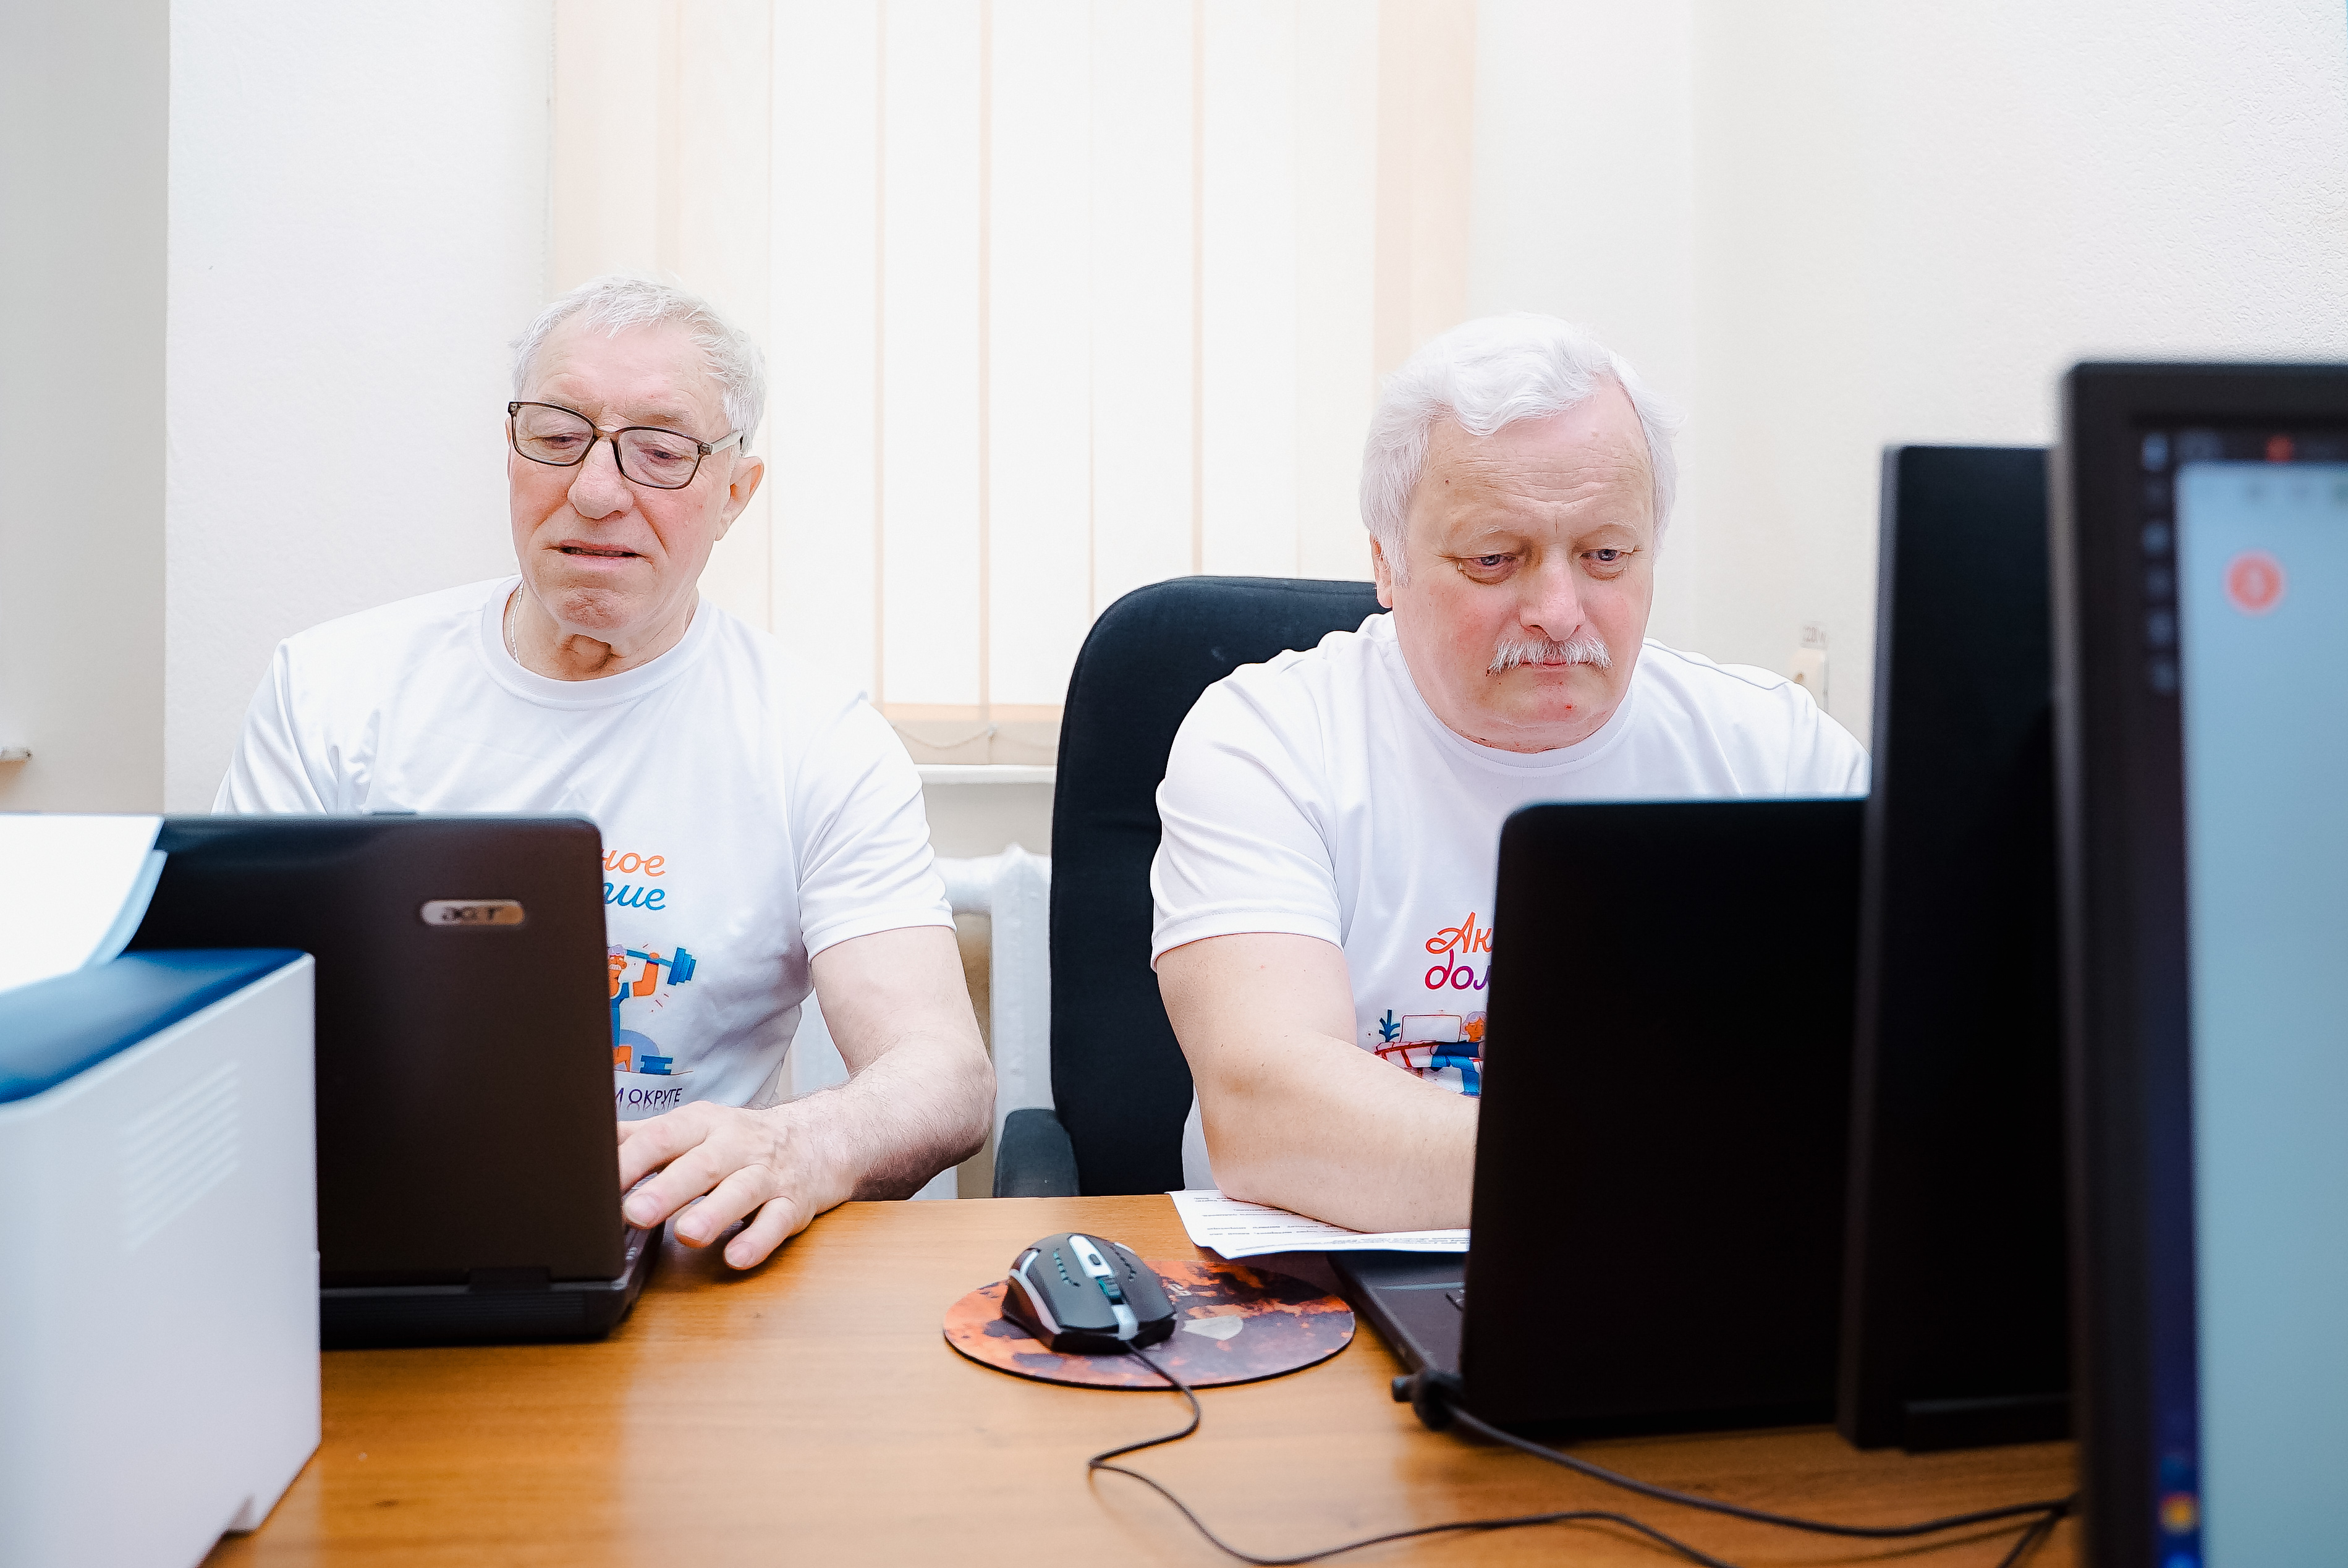 Завершился муниципальный этап конкурса по компьютерному многоборью среди пенсионеров